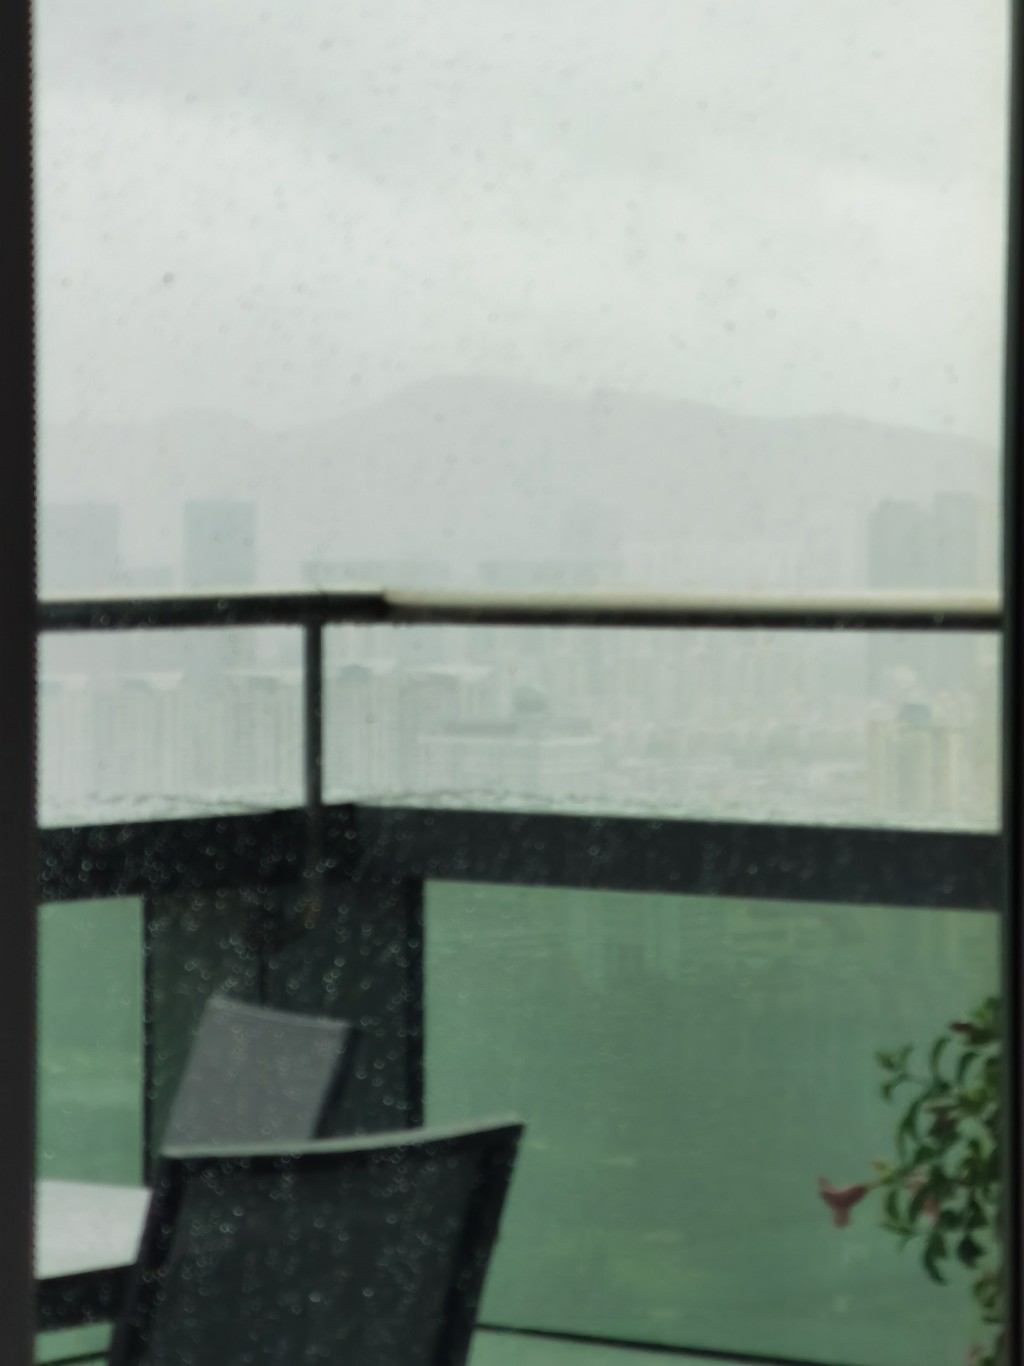 有网民贴出深圳的天气。